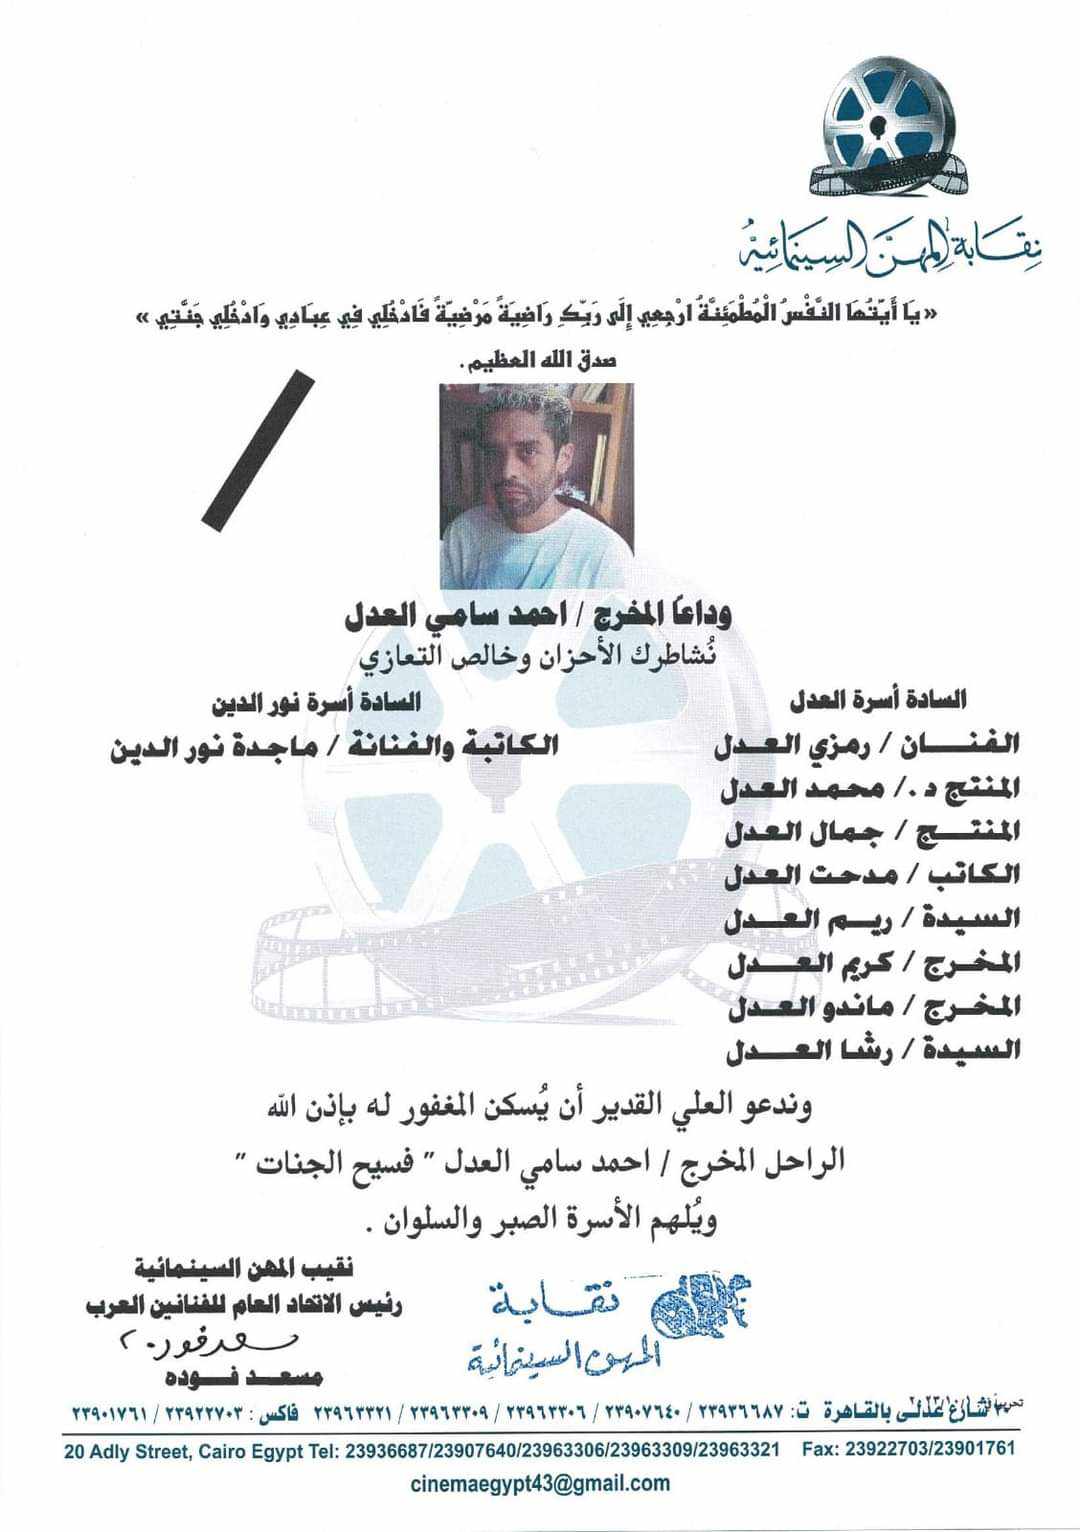  نقابة المهن السينمائية تنعي المخرج أحمد سامي العدل